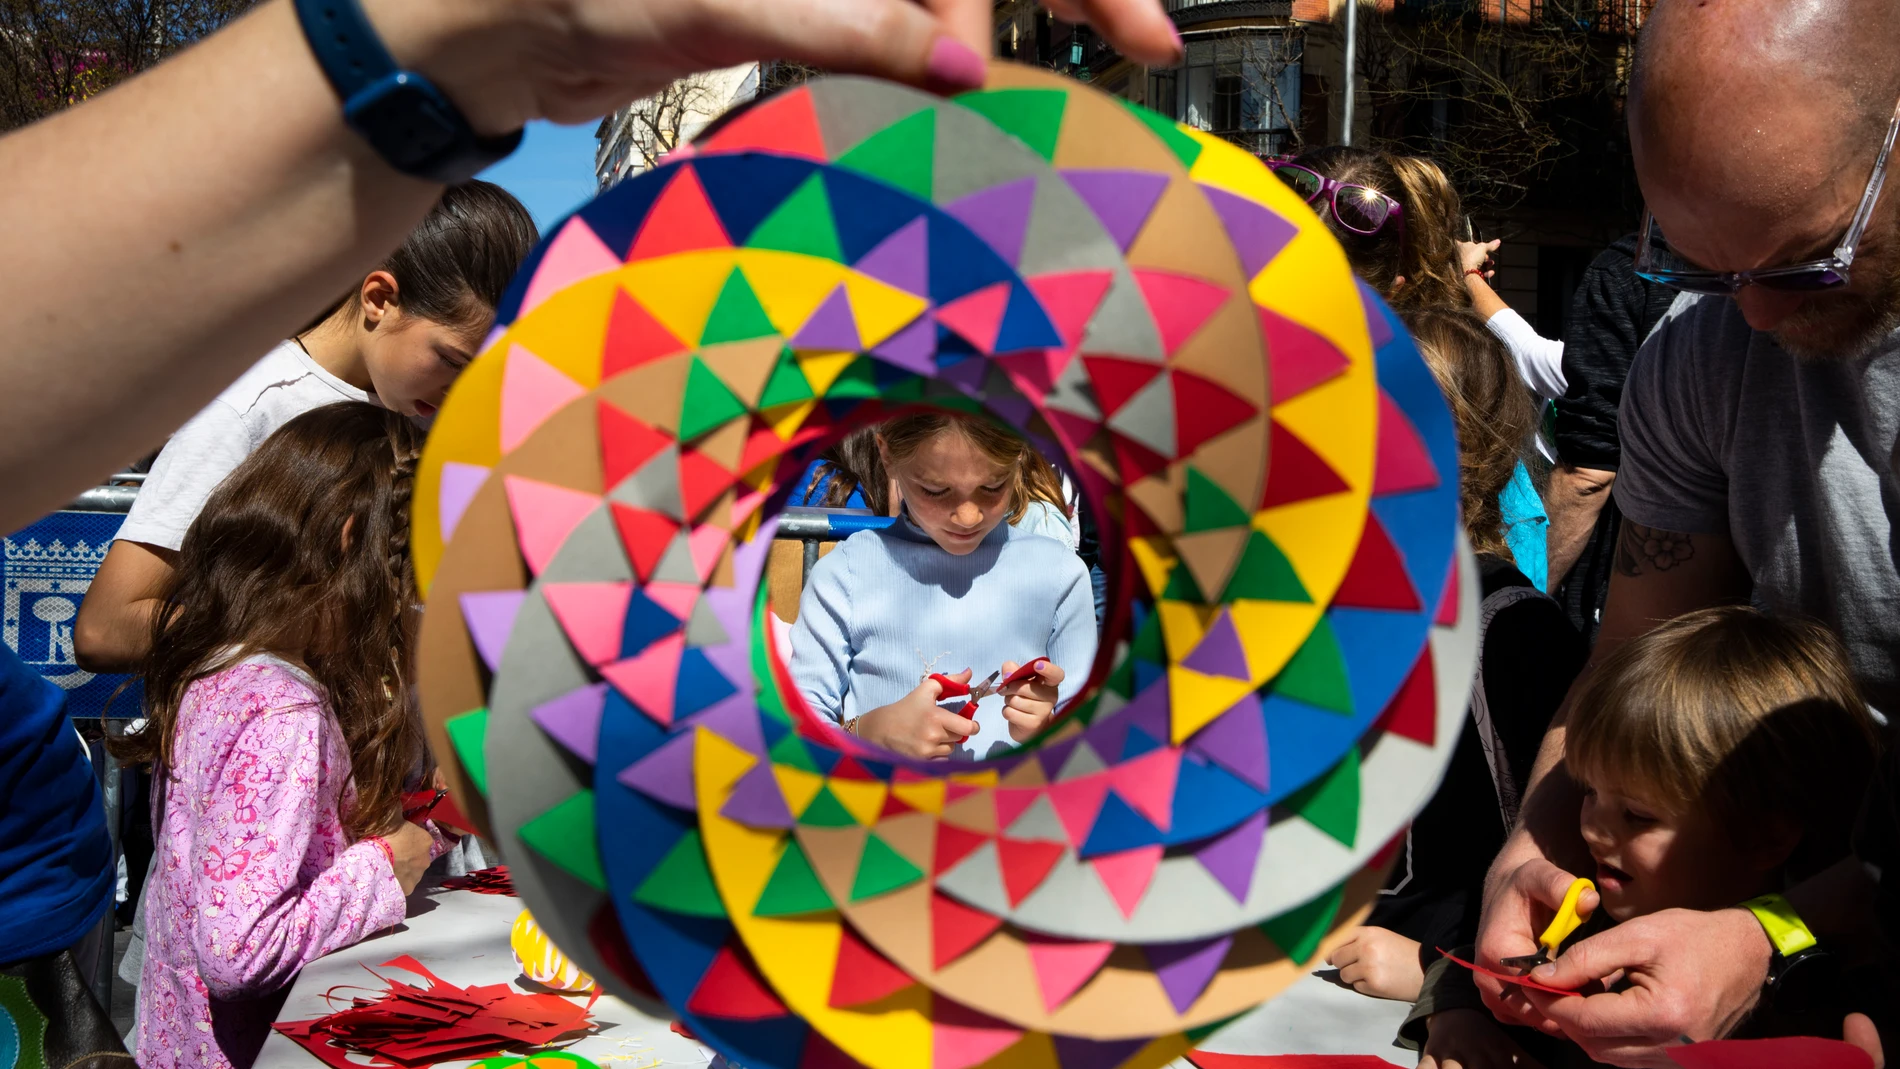 Certamen infantil de "Matemáticas en la calle" en el que participan niños con ejercicios y actividades matemáticas en la calle Fuencarral de Madrid. © Jesús G. Feria.